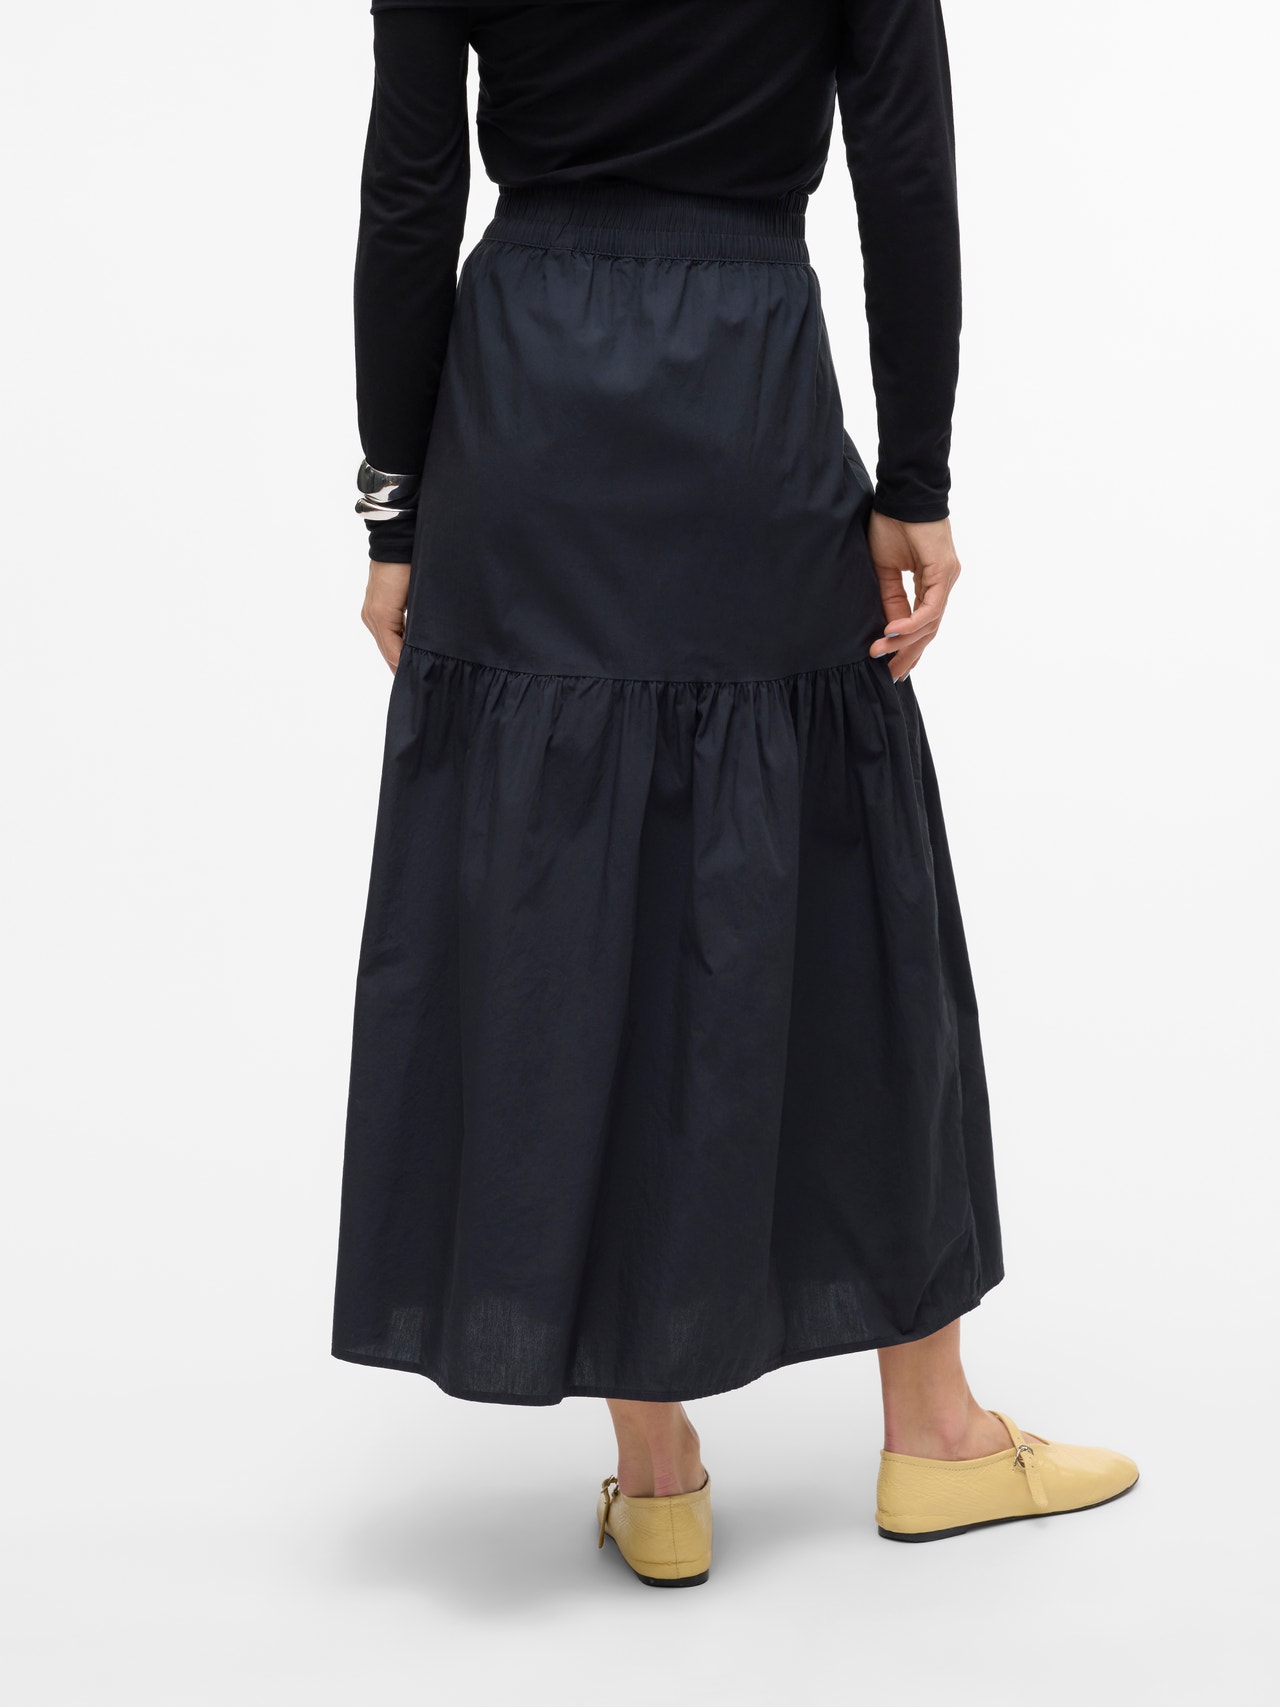 Vero Moda VMCHARLOTTE Long skirt -Black - 10303657